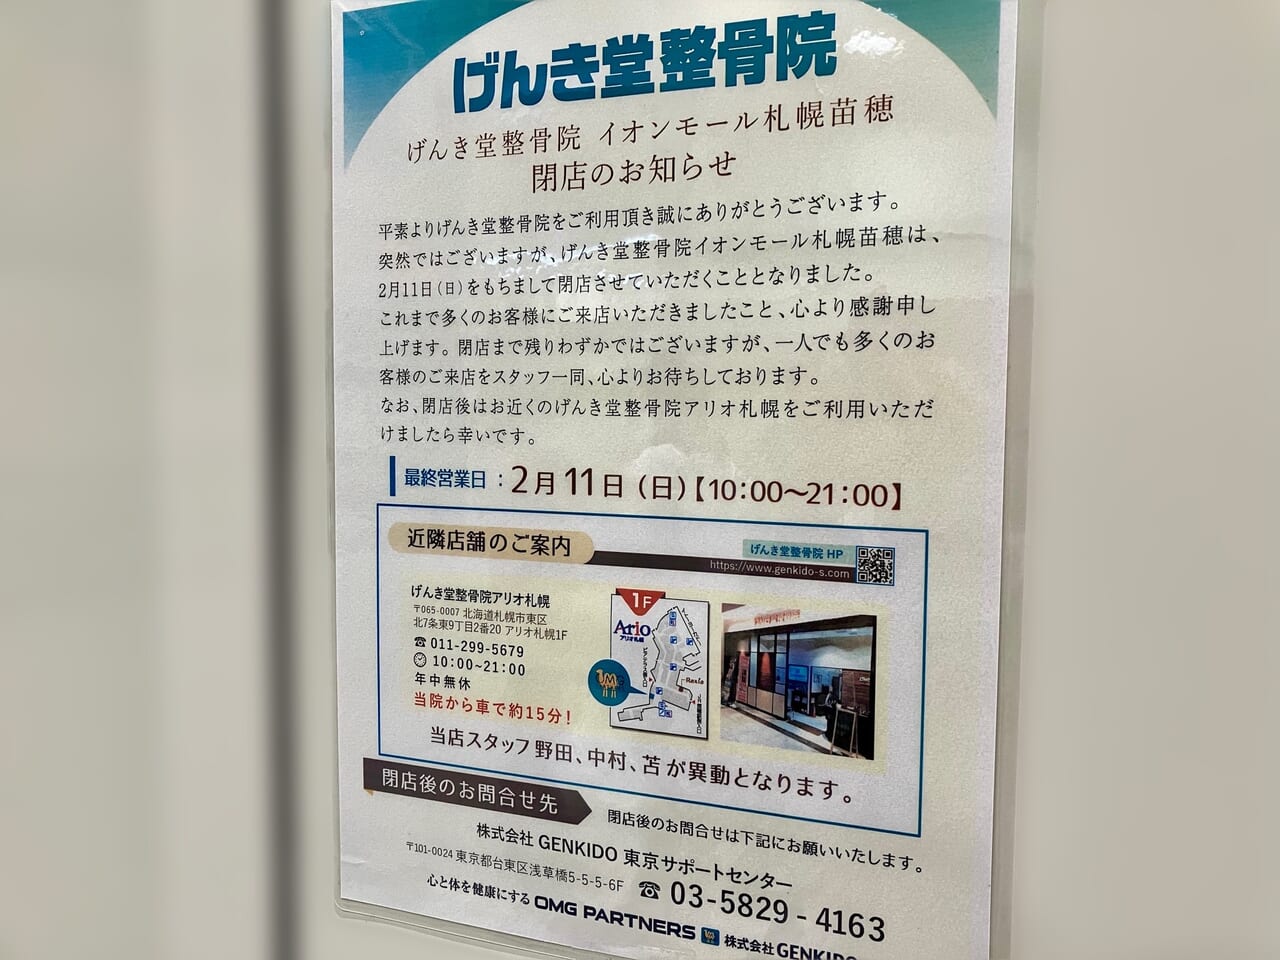 イオンモール札幌苗穂の「げんき堂整骨院」が閉店していました。次にオープンする店舗も決まっているようですよ。